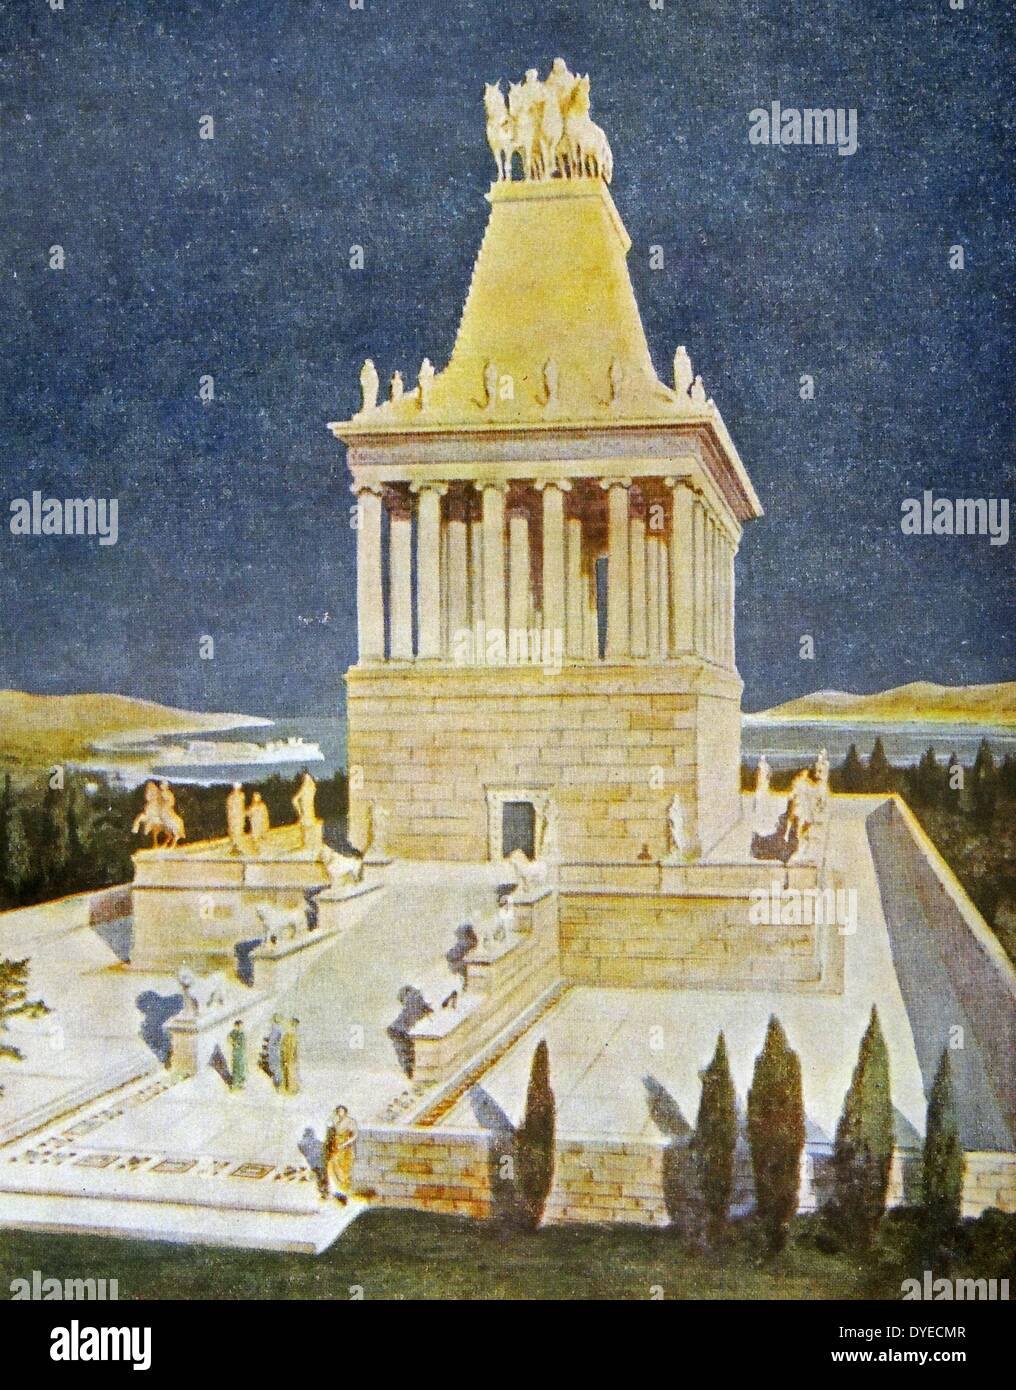 Une illustration du mausolée d'Halicarnasse, également connu sous le nom, le tombeau de Mausole. Construit entre 353 et 350 av. J.-C. à Halicarnasse (aujourd'hui Bodrum, Turquie) pour Mausole Satrape, un à l'Empire perse, et son épouse. Banque D'Images